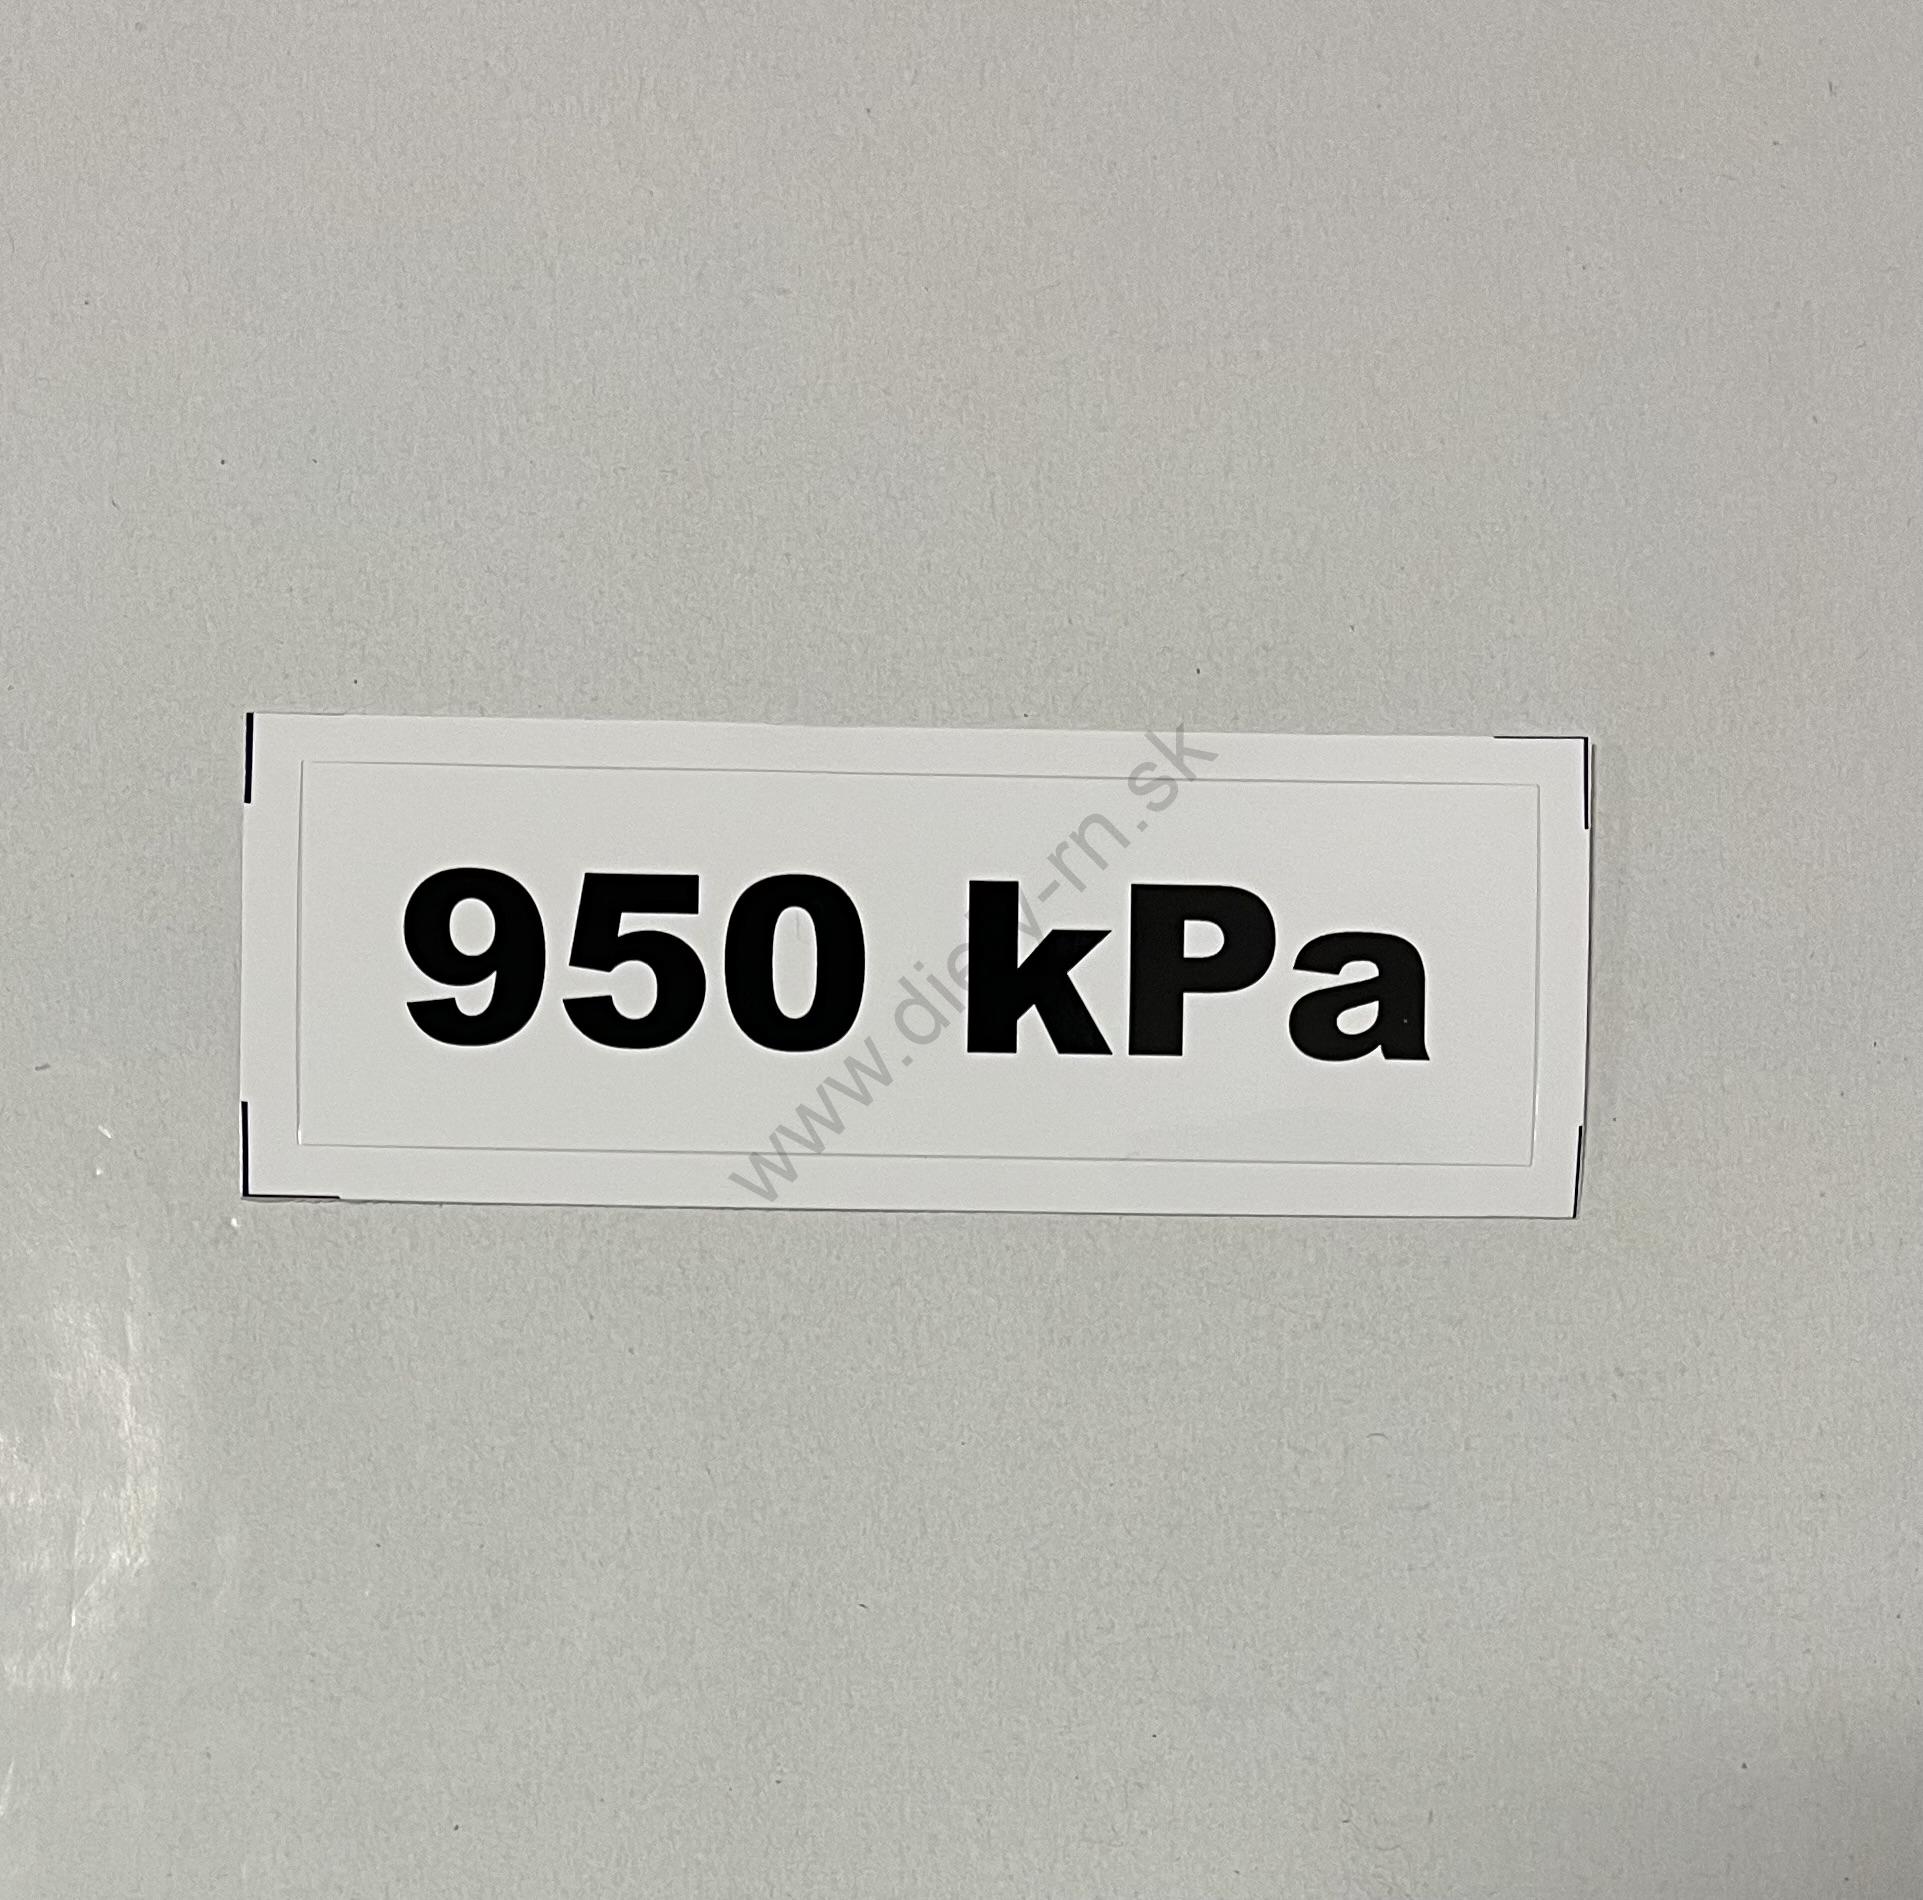 Označenie kPa 950